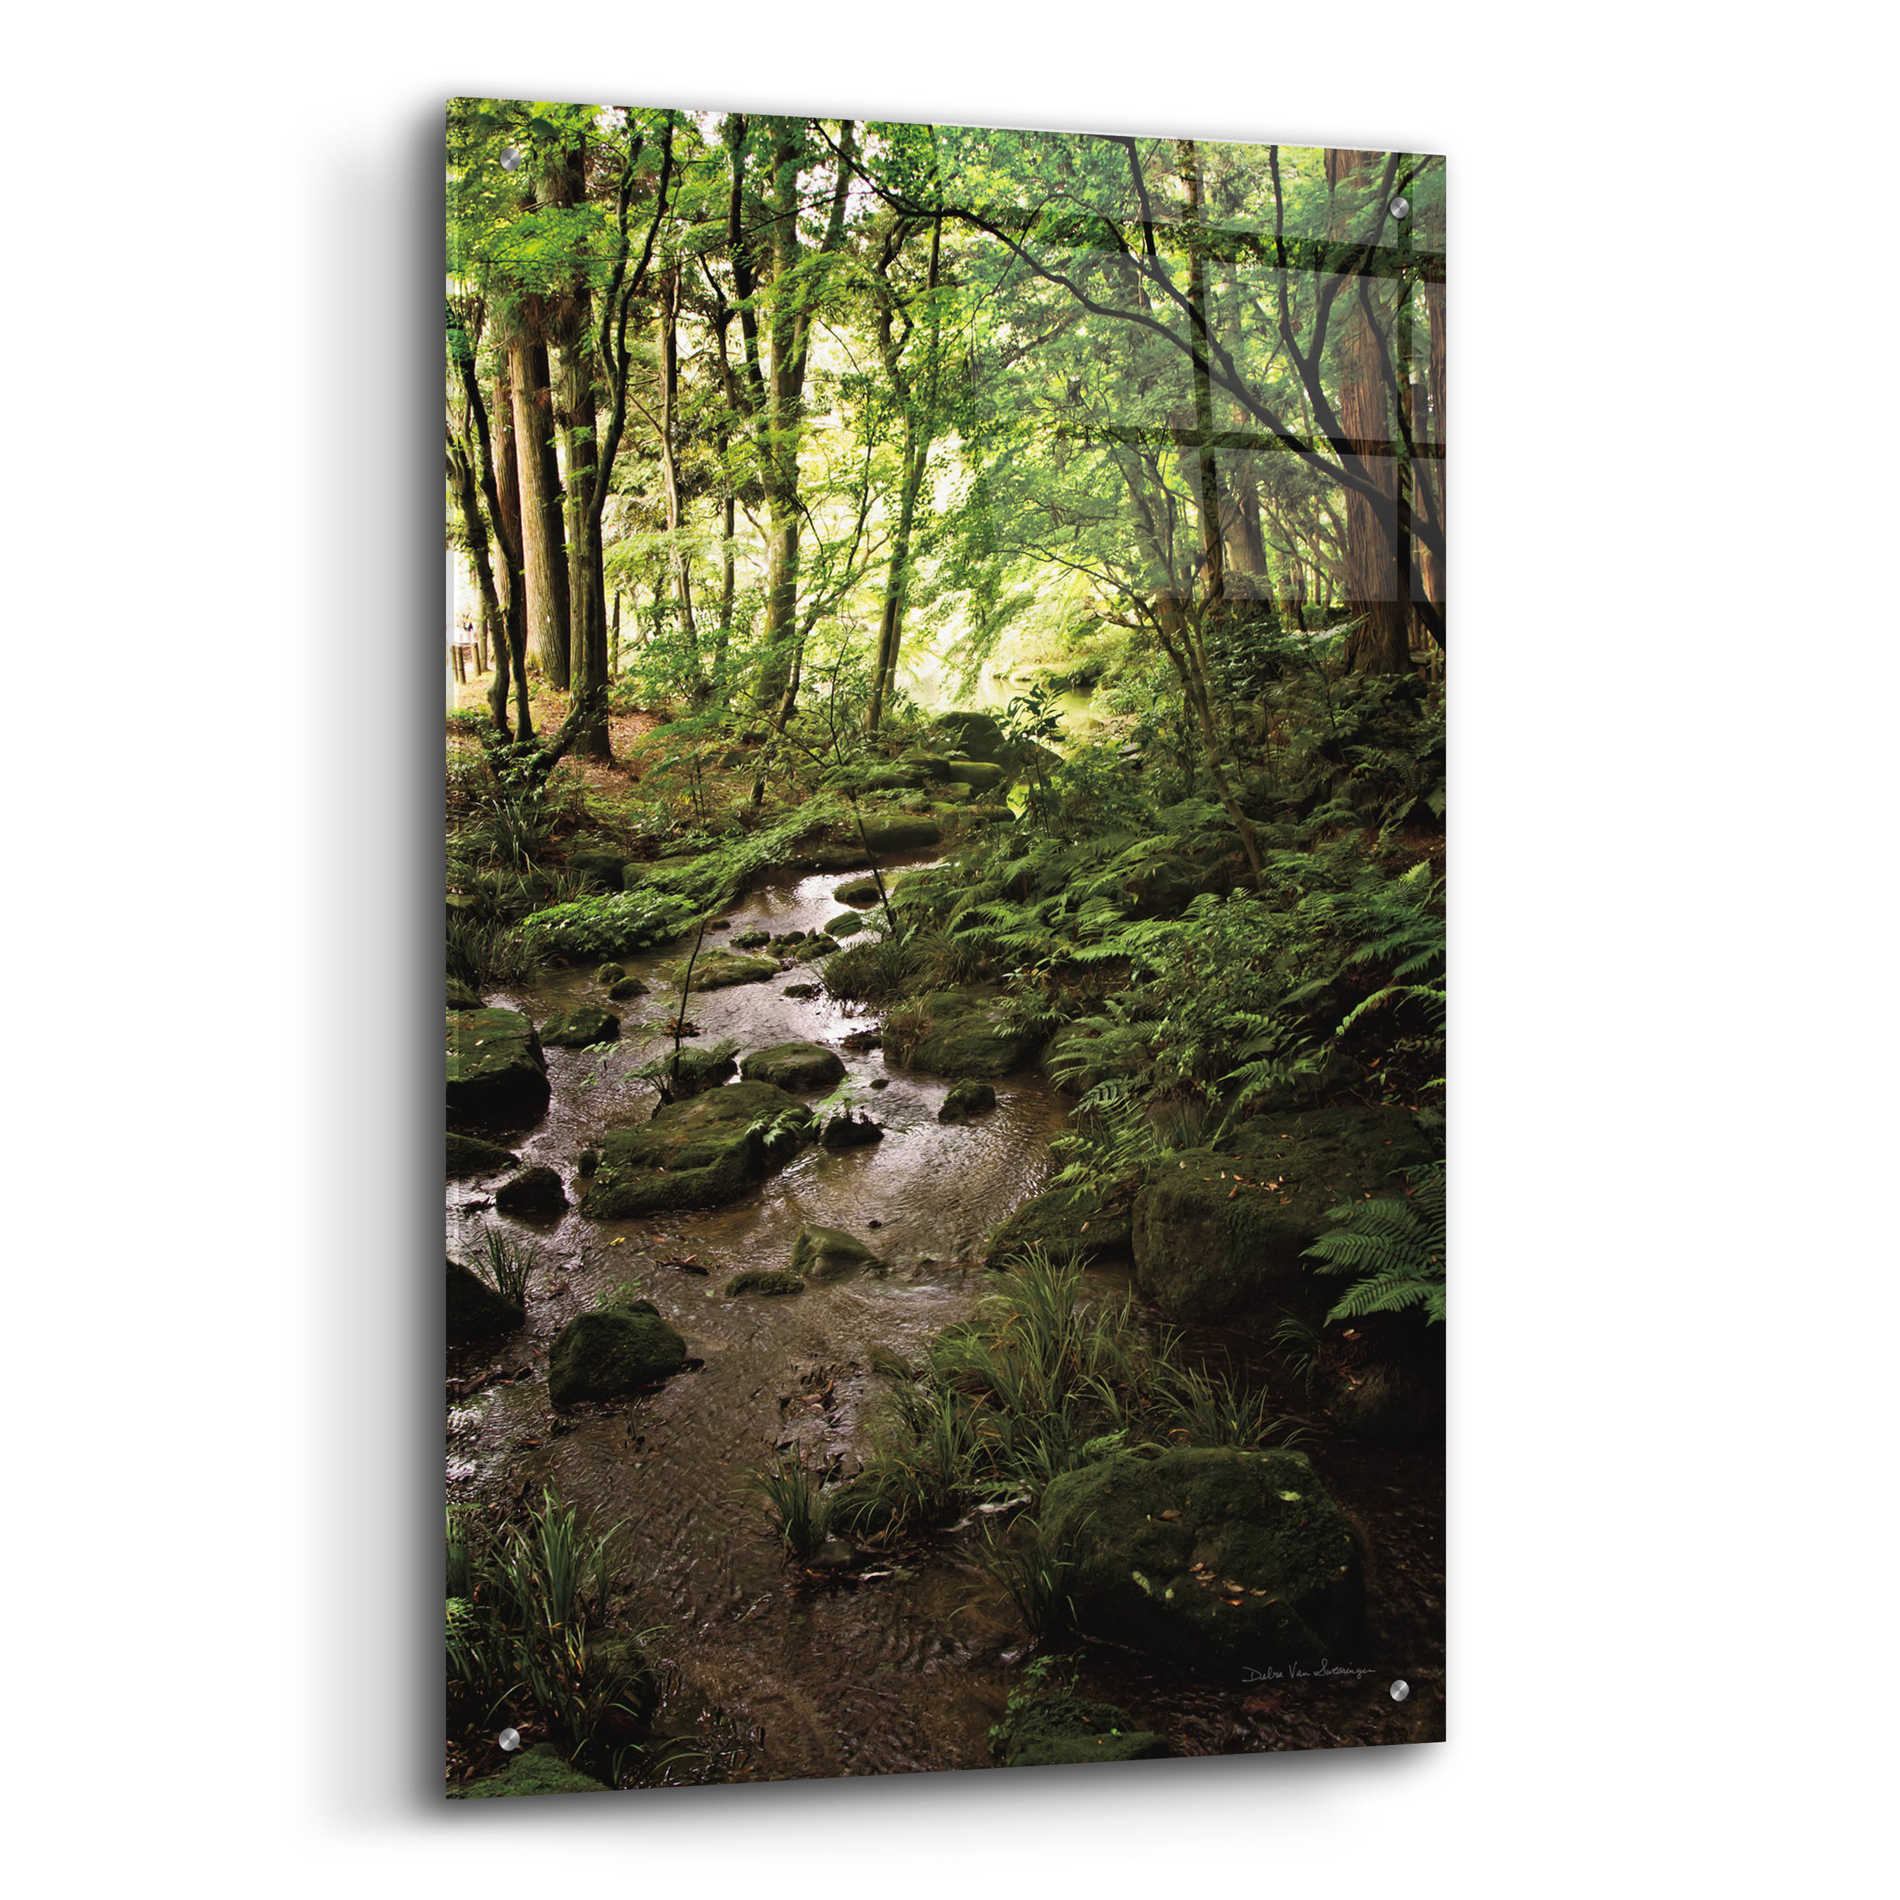 Epic Art 'Lush Creek in Forest' by Debra Van Swearingen, Acrylic Glass Wall Art,24x36